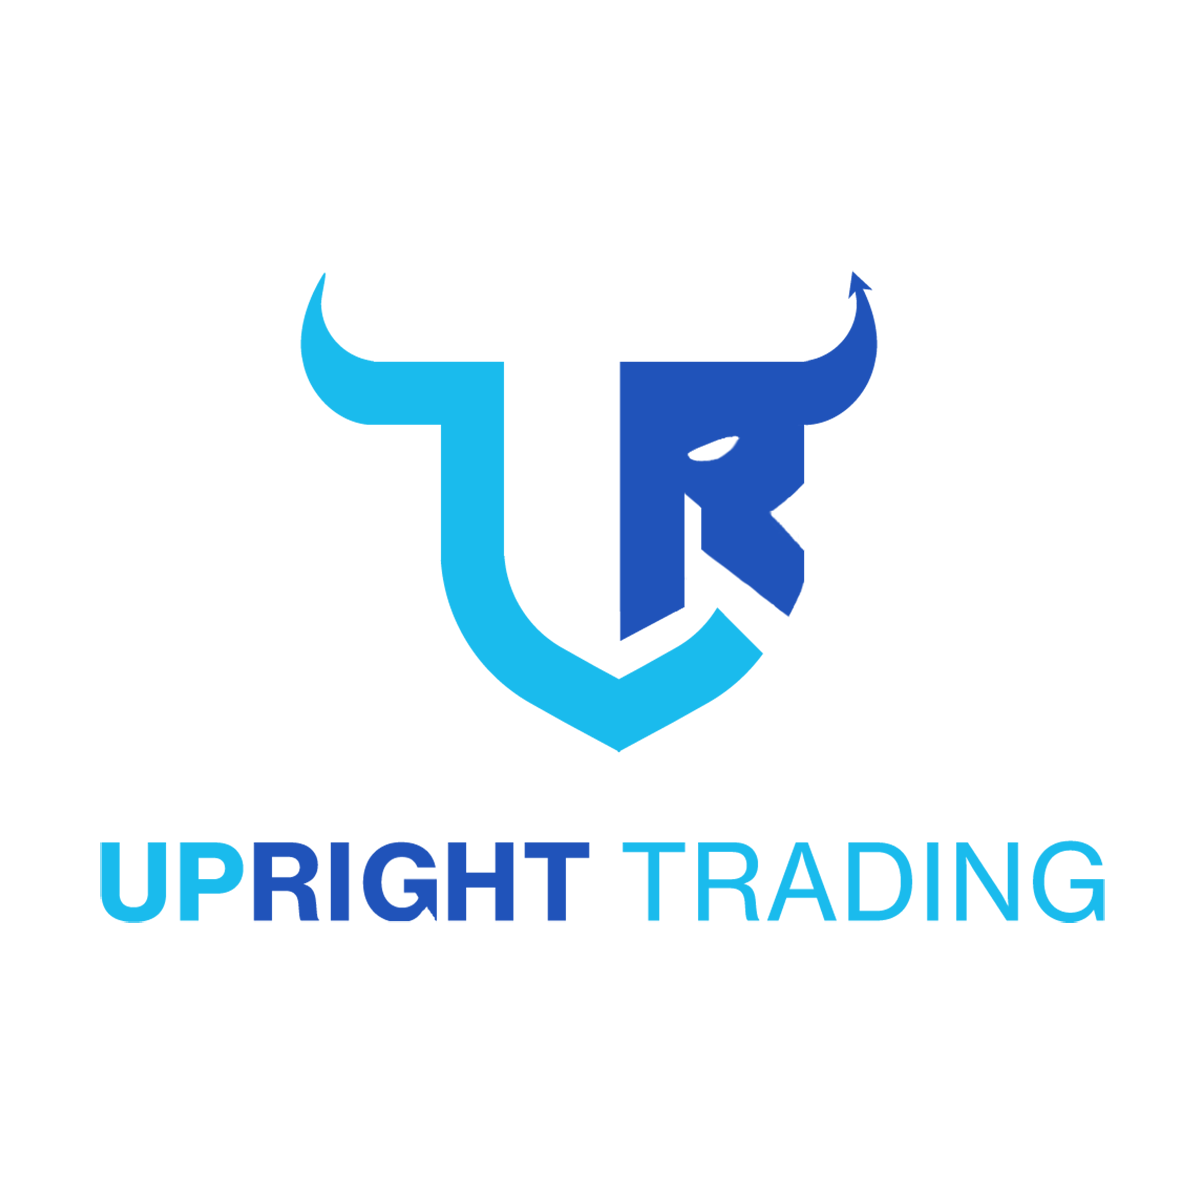 UPRIGHT Trading logo white